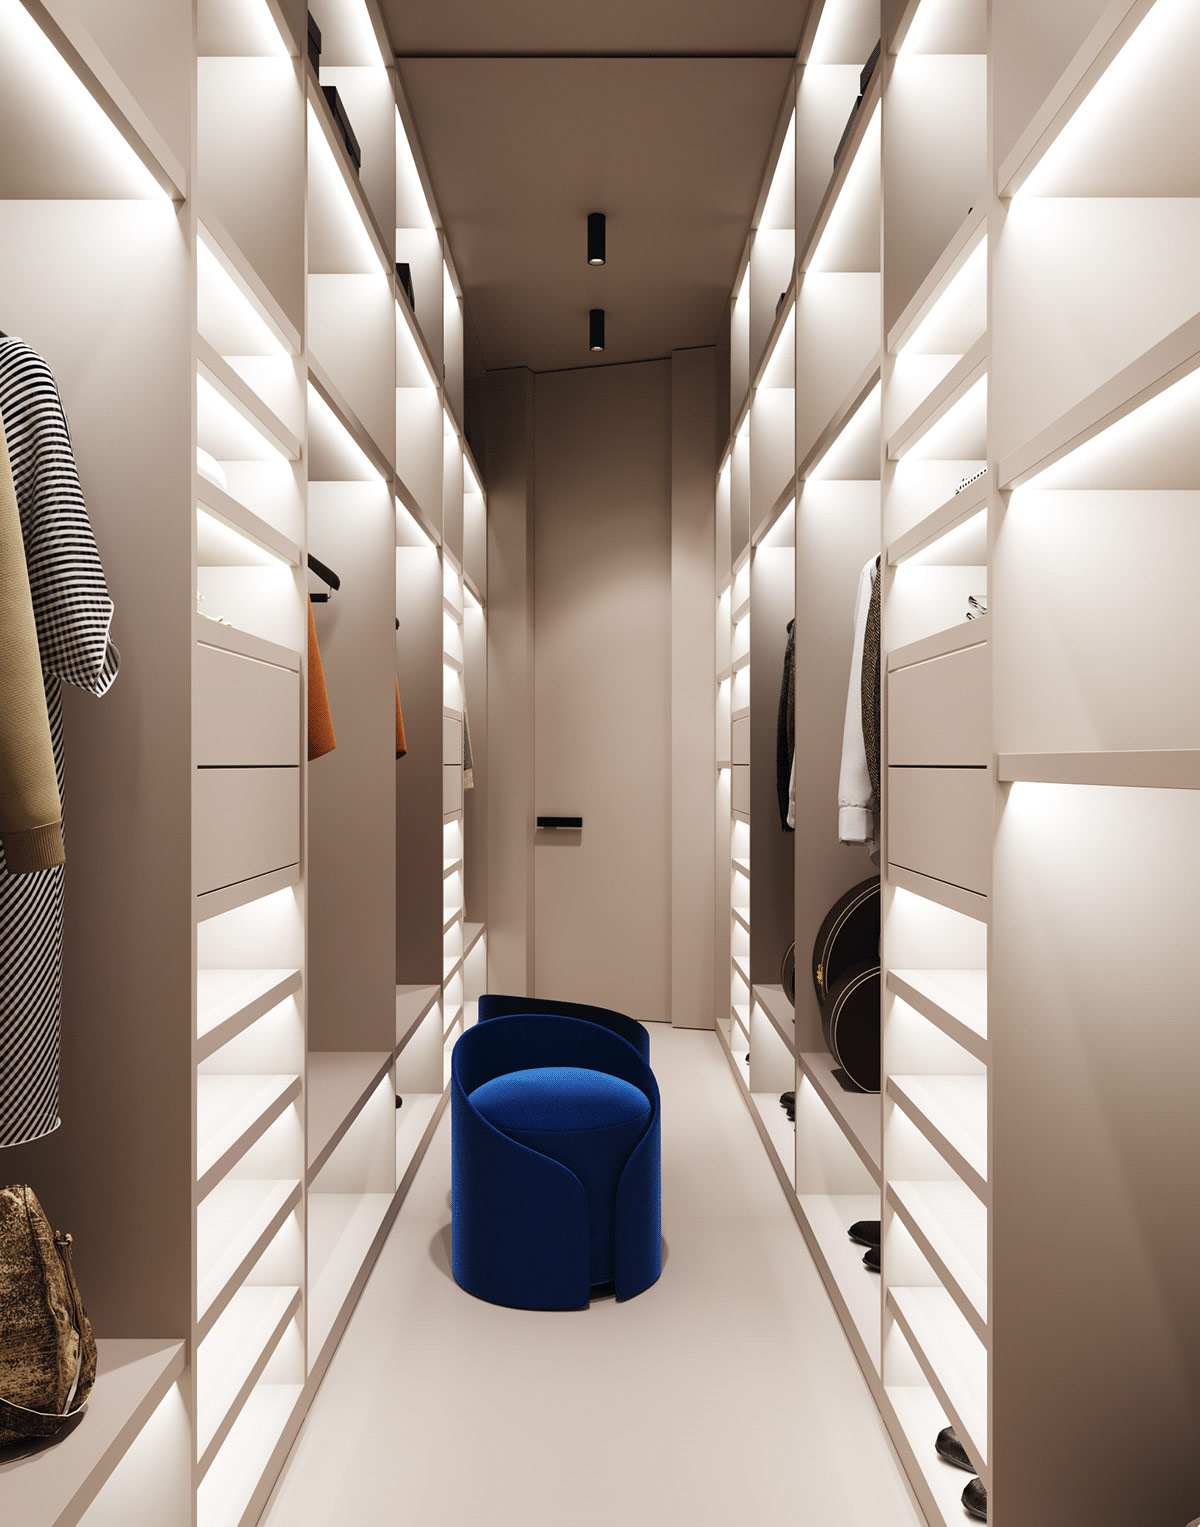 星际飞船风格家具的未来派家居装修设计